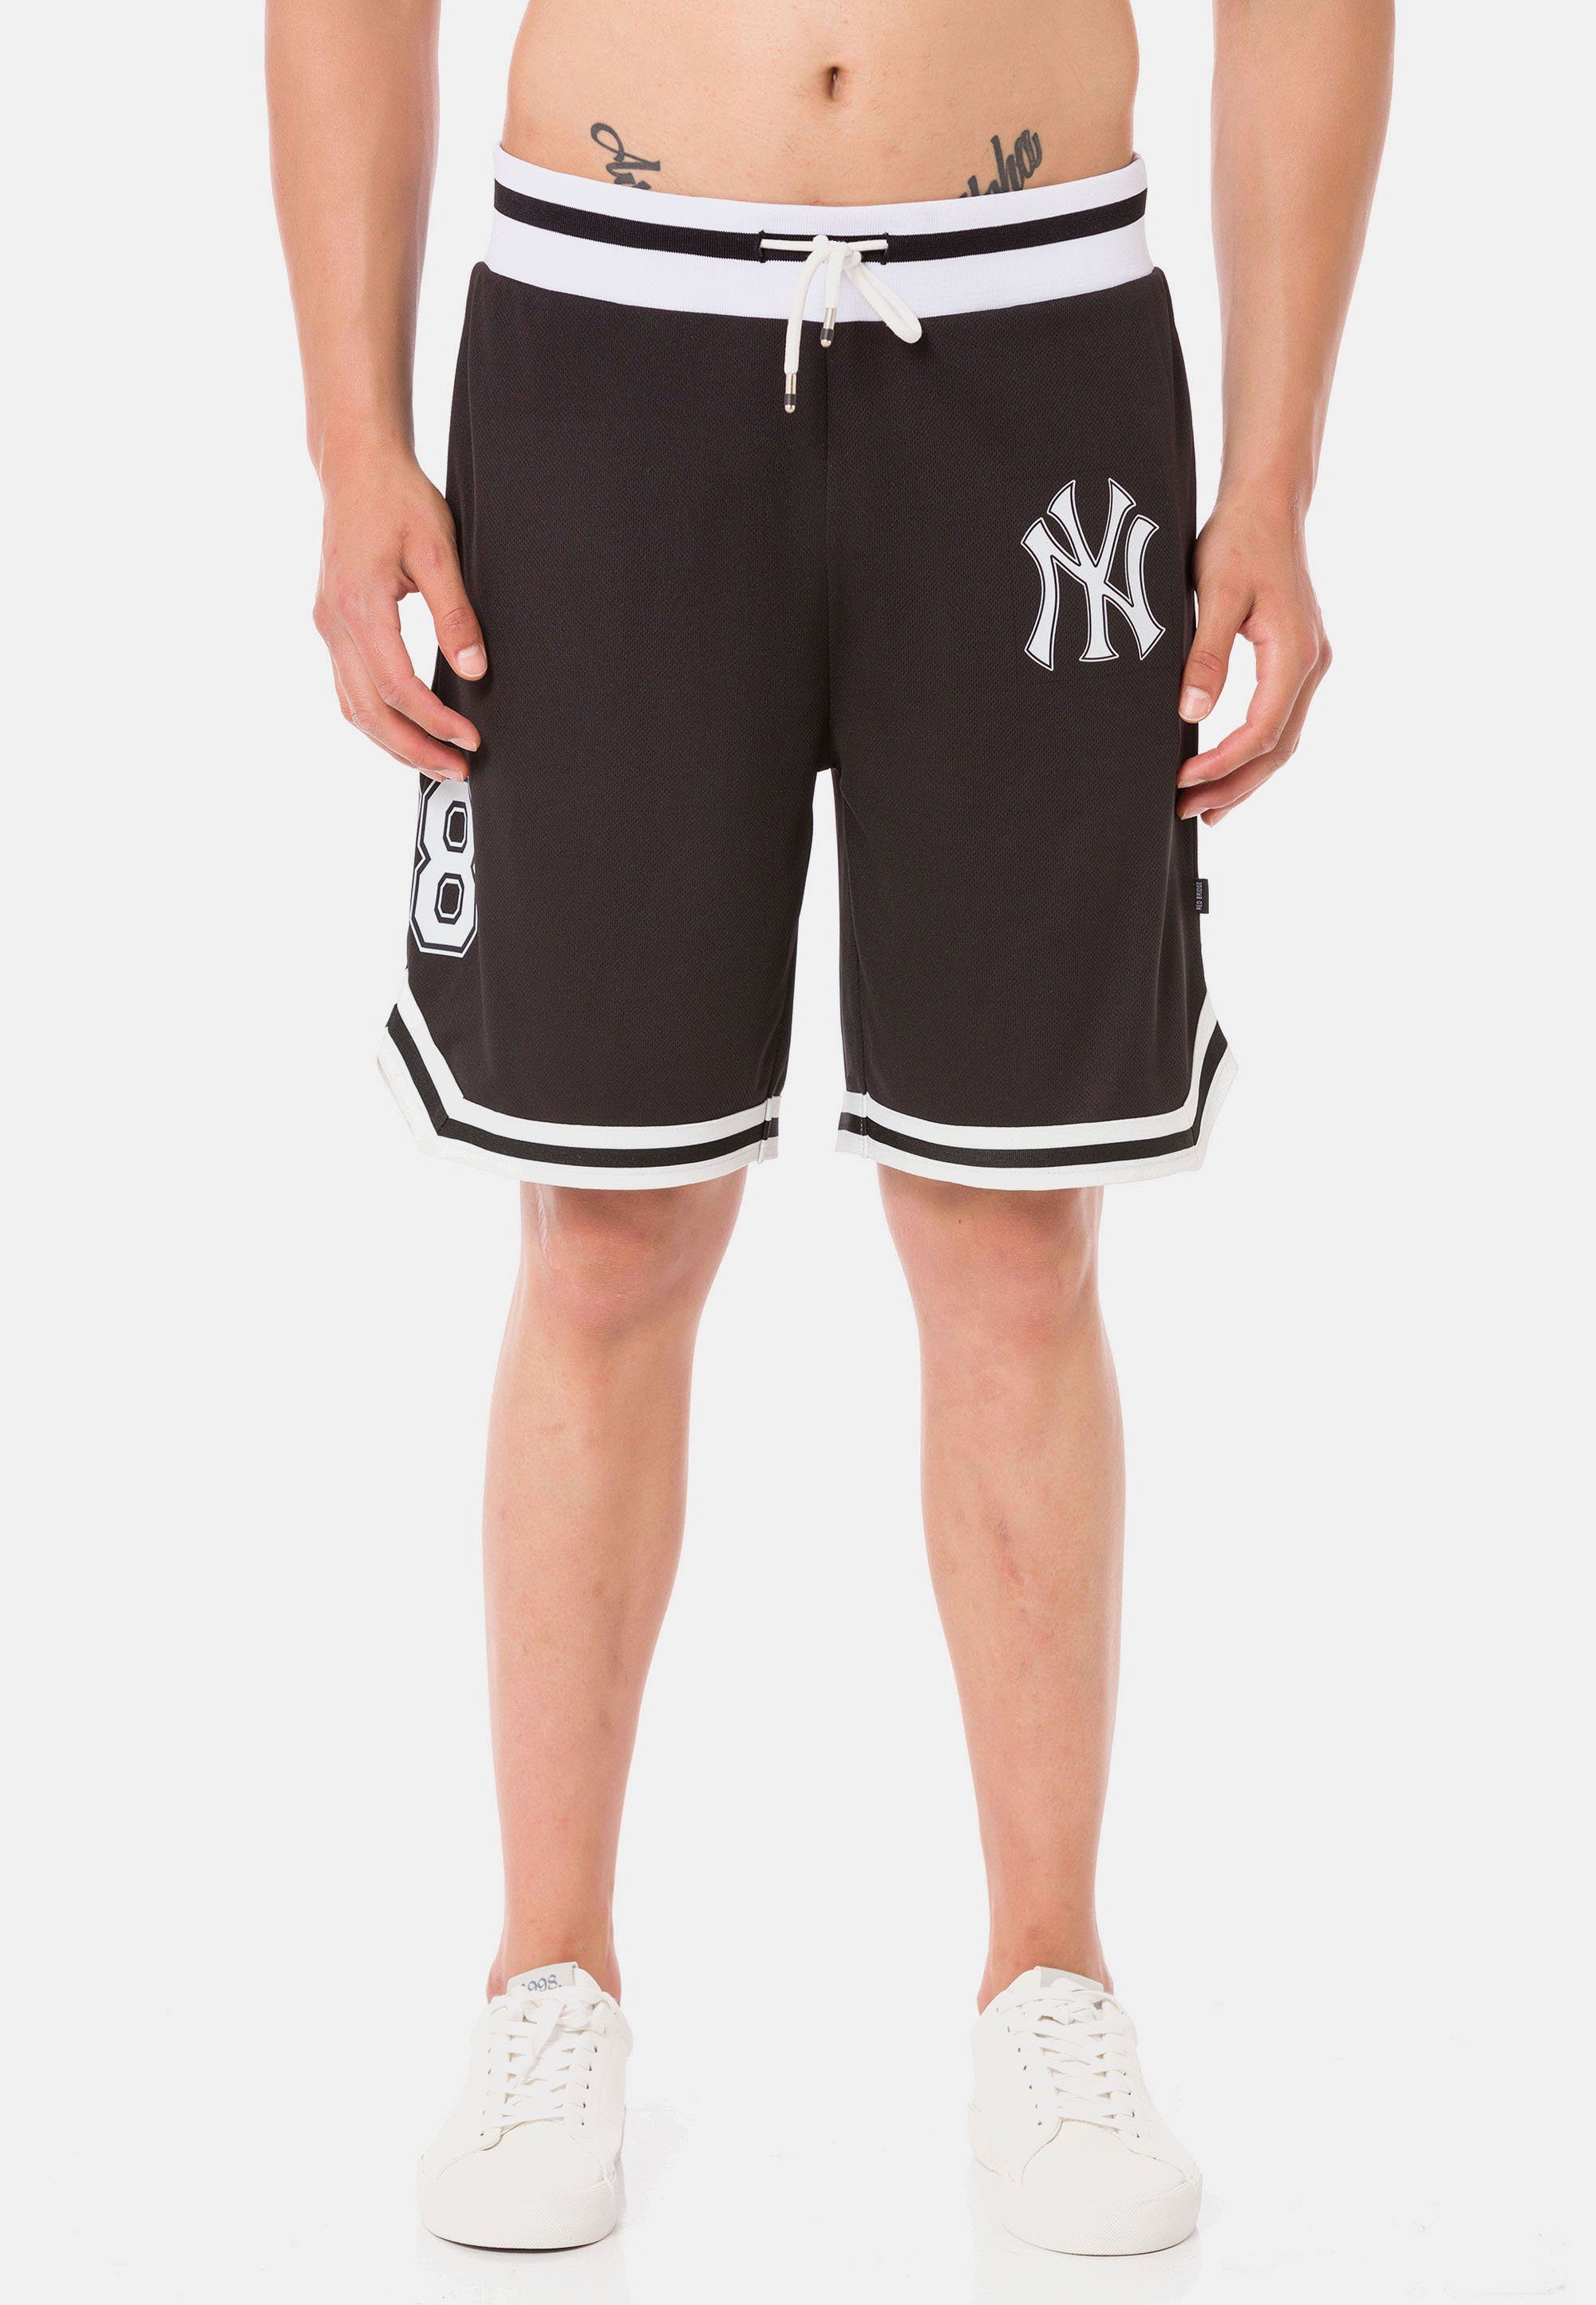 RedBridge Shorts Galeomaltande mit lässigen Kontraststreifen schwarz-weiß | Shorts